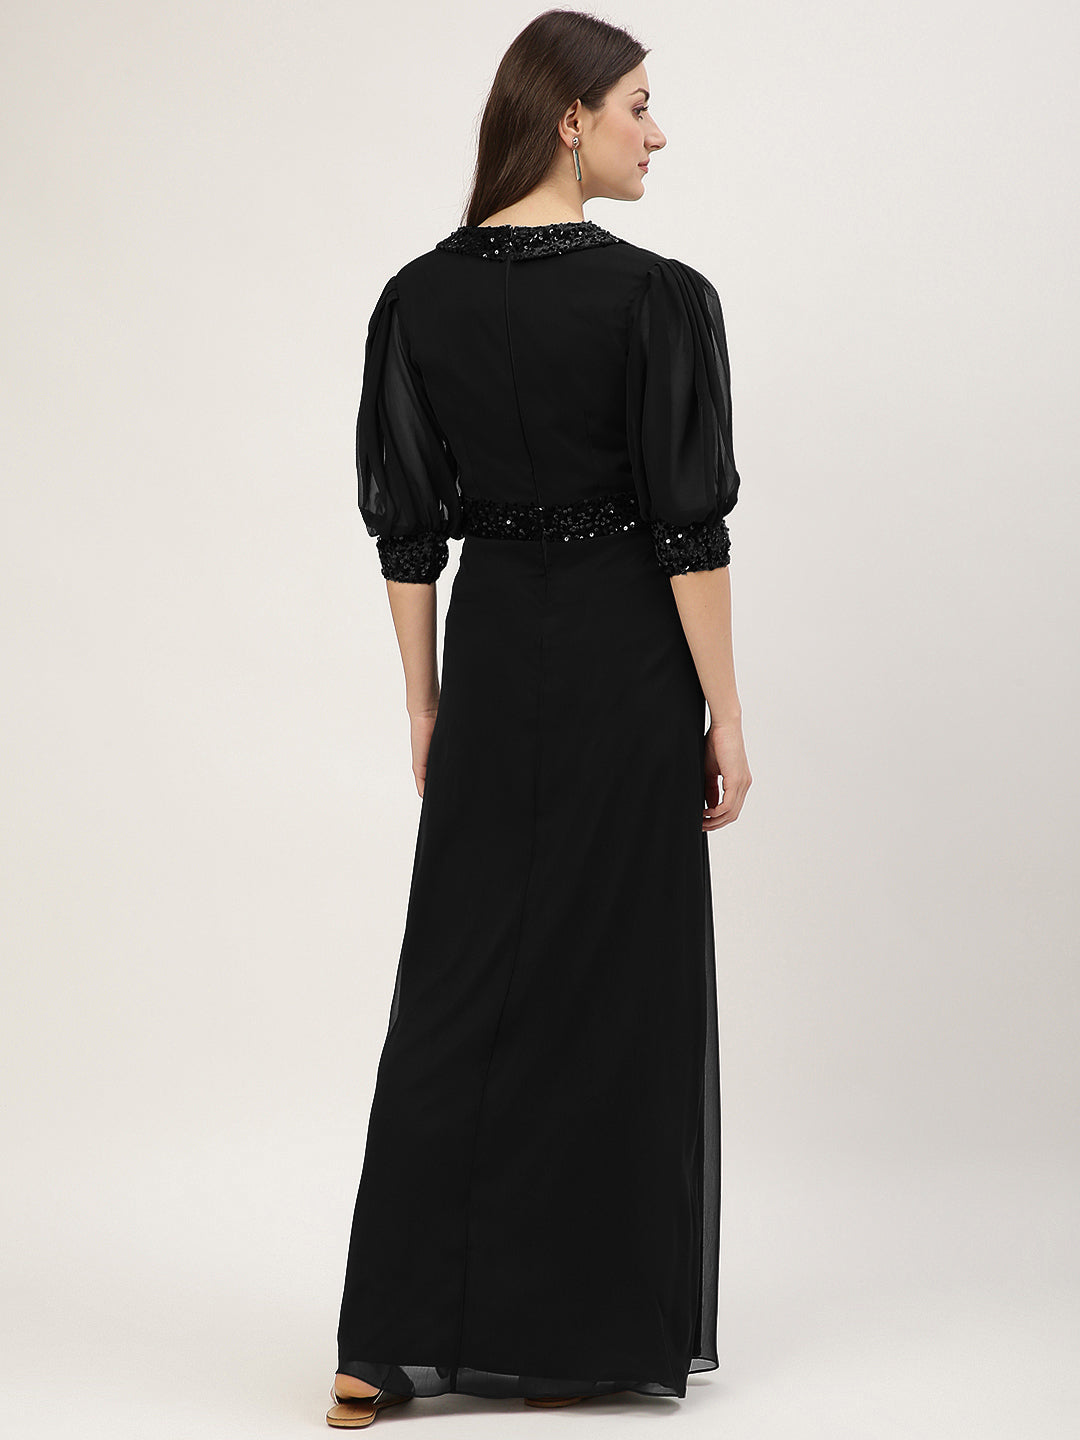 Black Embellished Slit Long Dress with 3/4 Sleeves